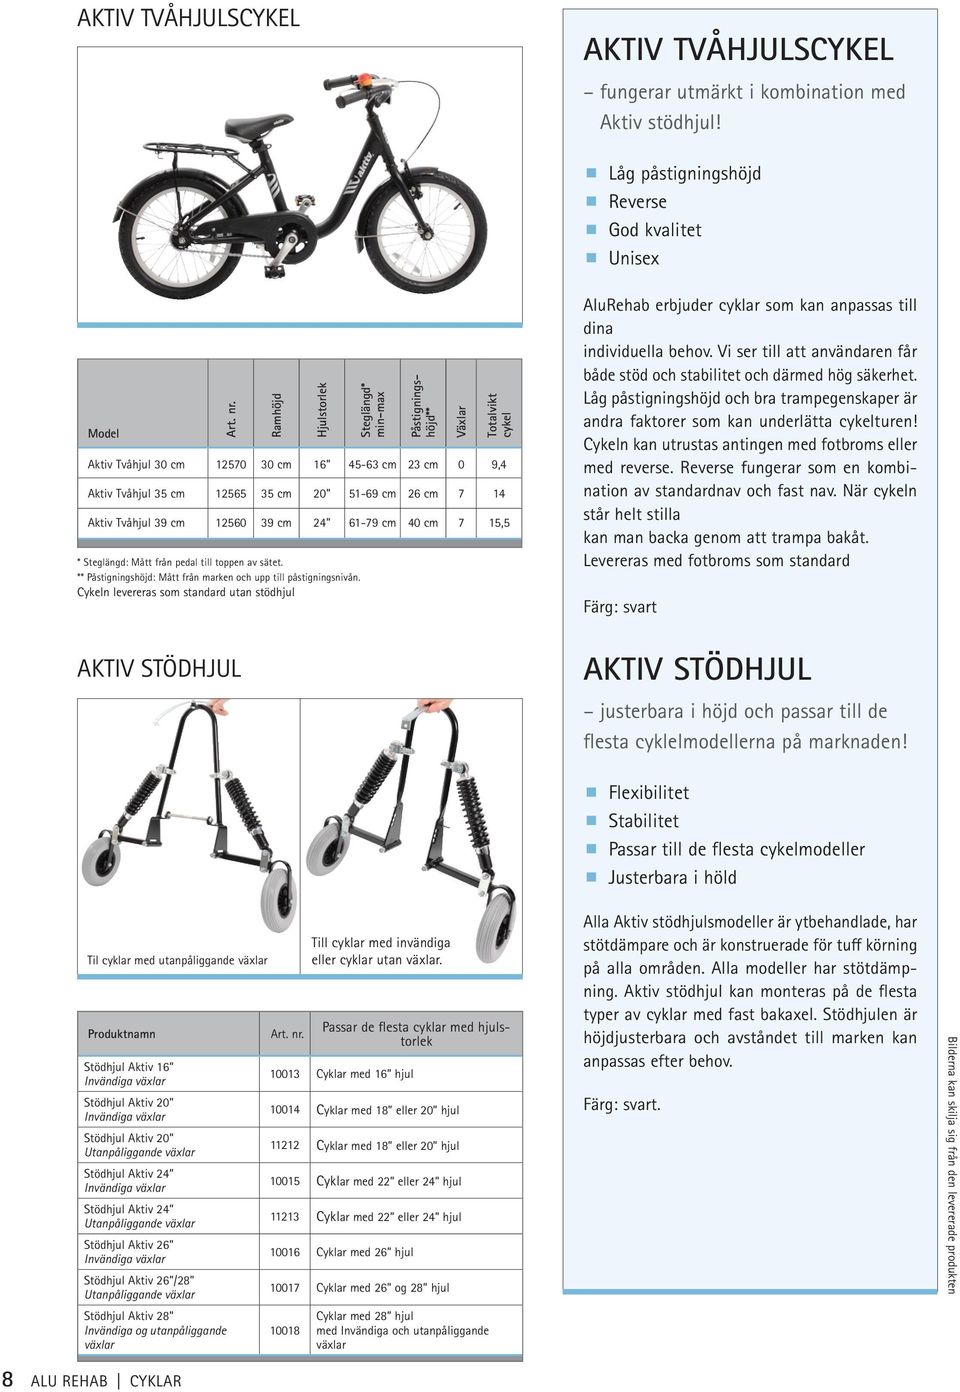 Aktiv Tvåhjul 39 cm 12560 39 cm 24 61-79 cm 40 cm 7 15,5 Cykeln levereras som standard utan stödhjul AluRehab erbjuder cyklar som kan anpassas till dina individuella behov.